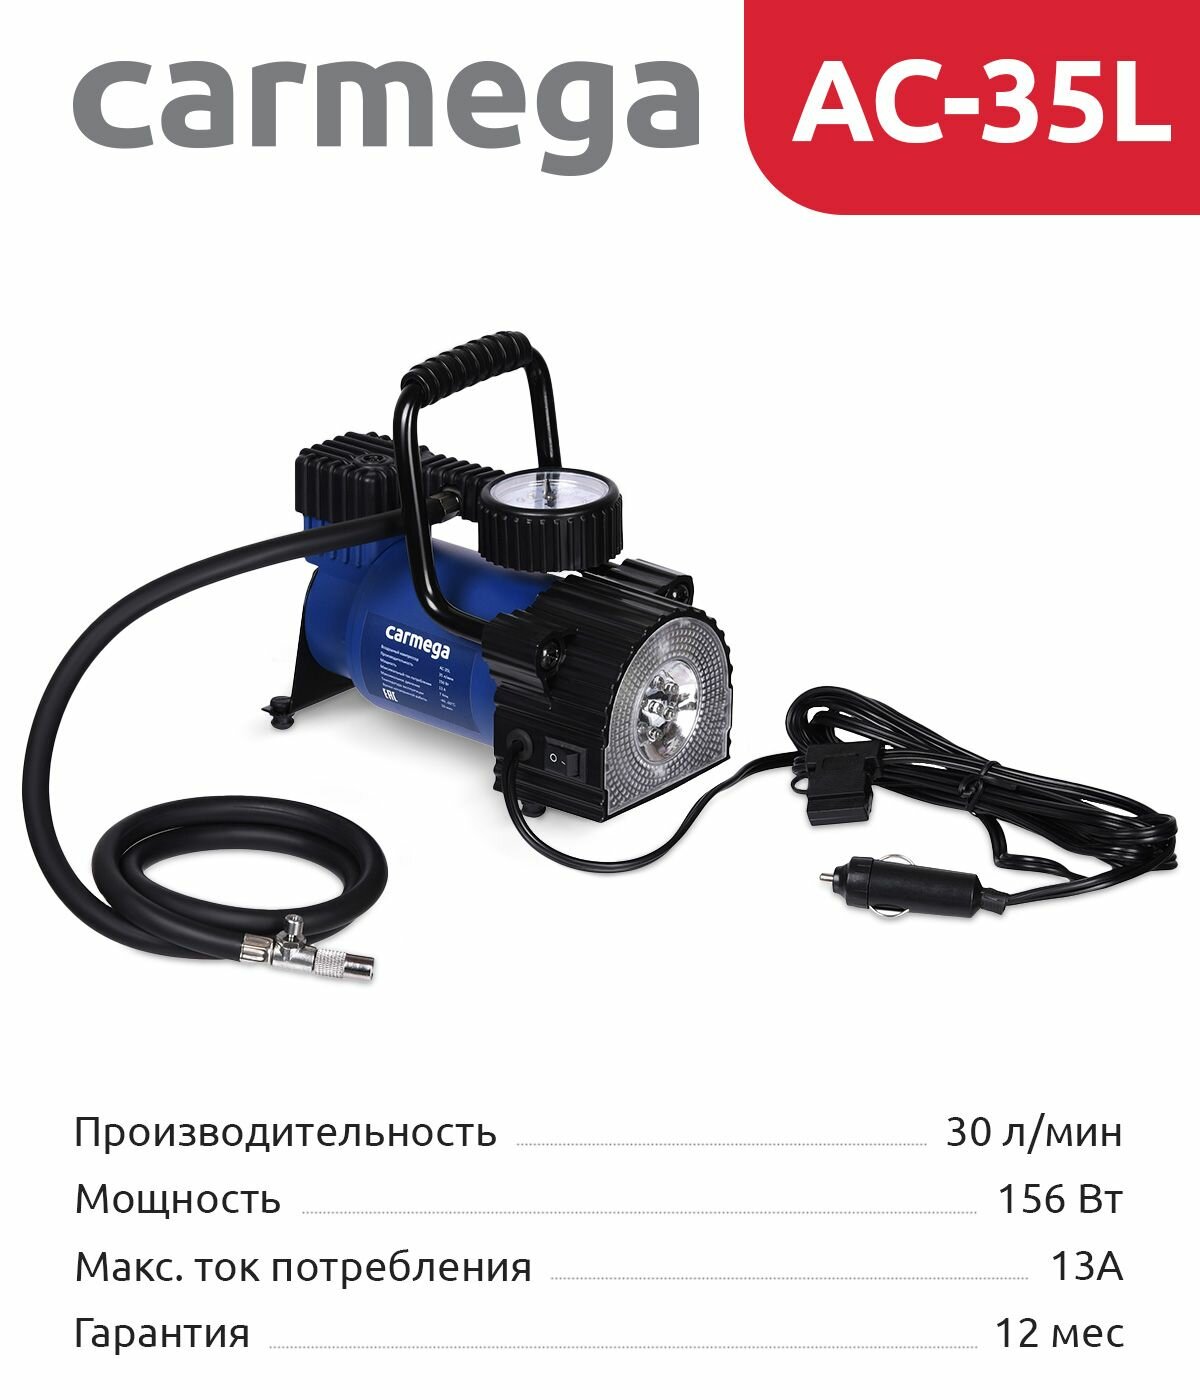 Carmega Carm-ac-35l Компрессор 35л/мин синий .